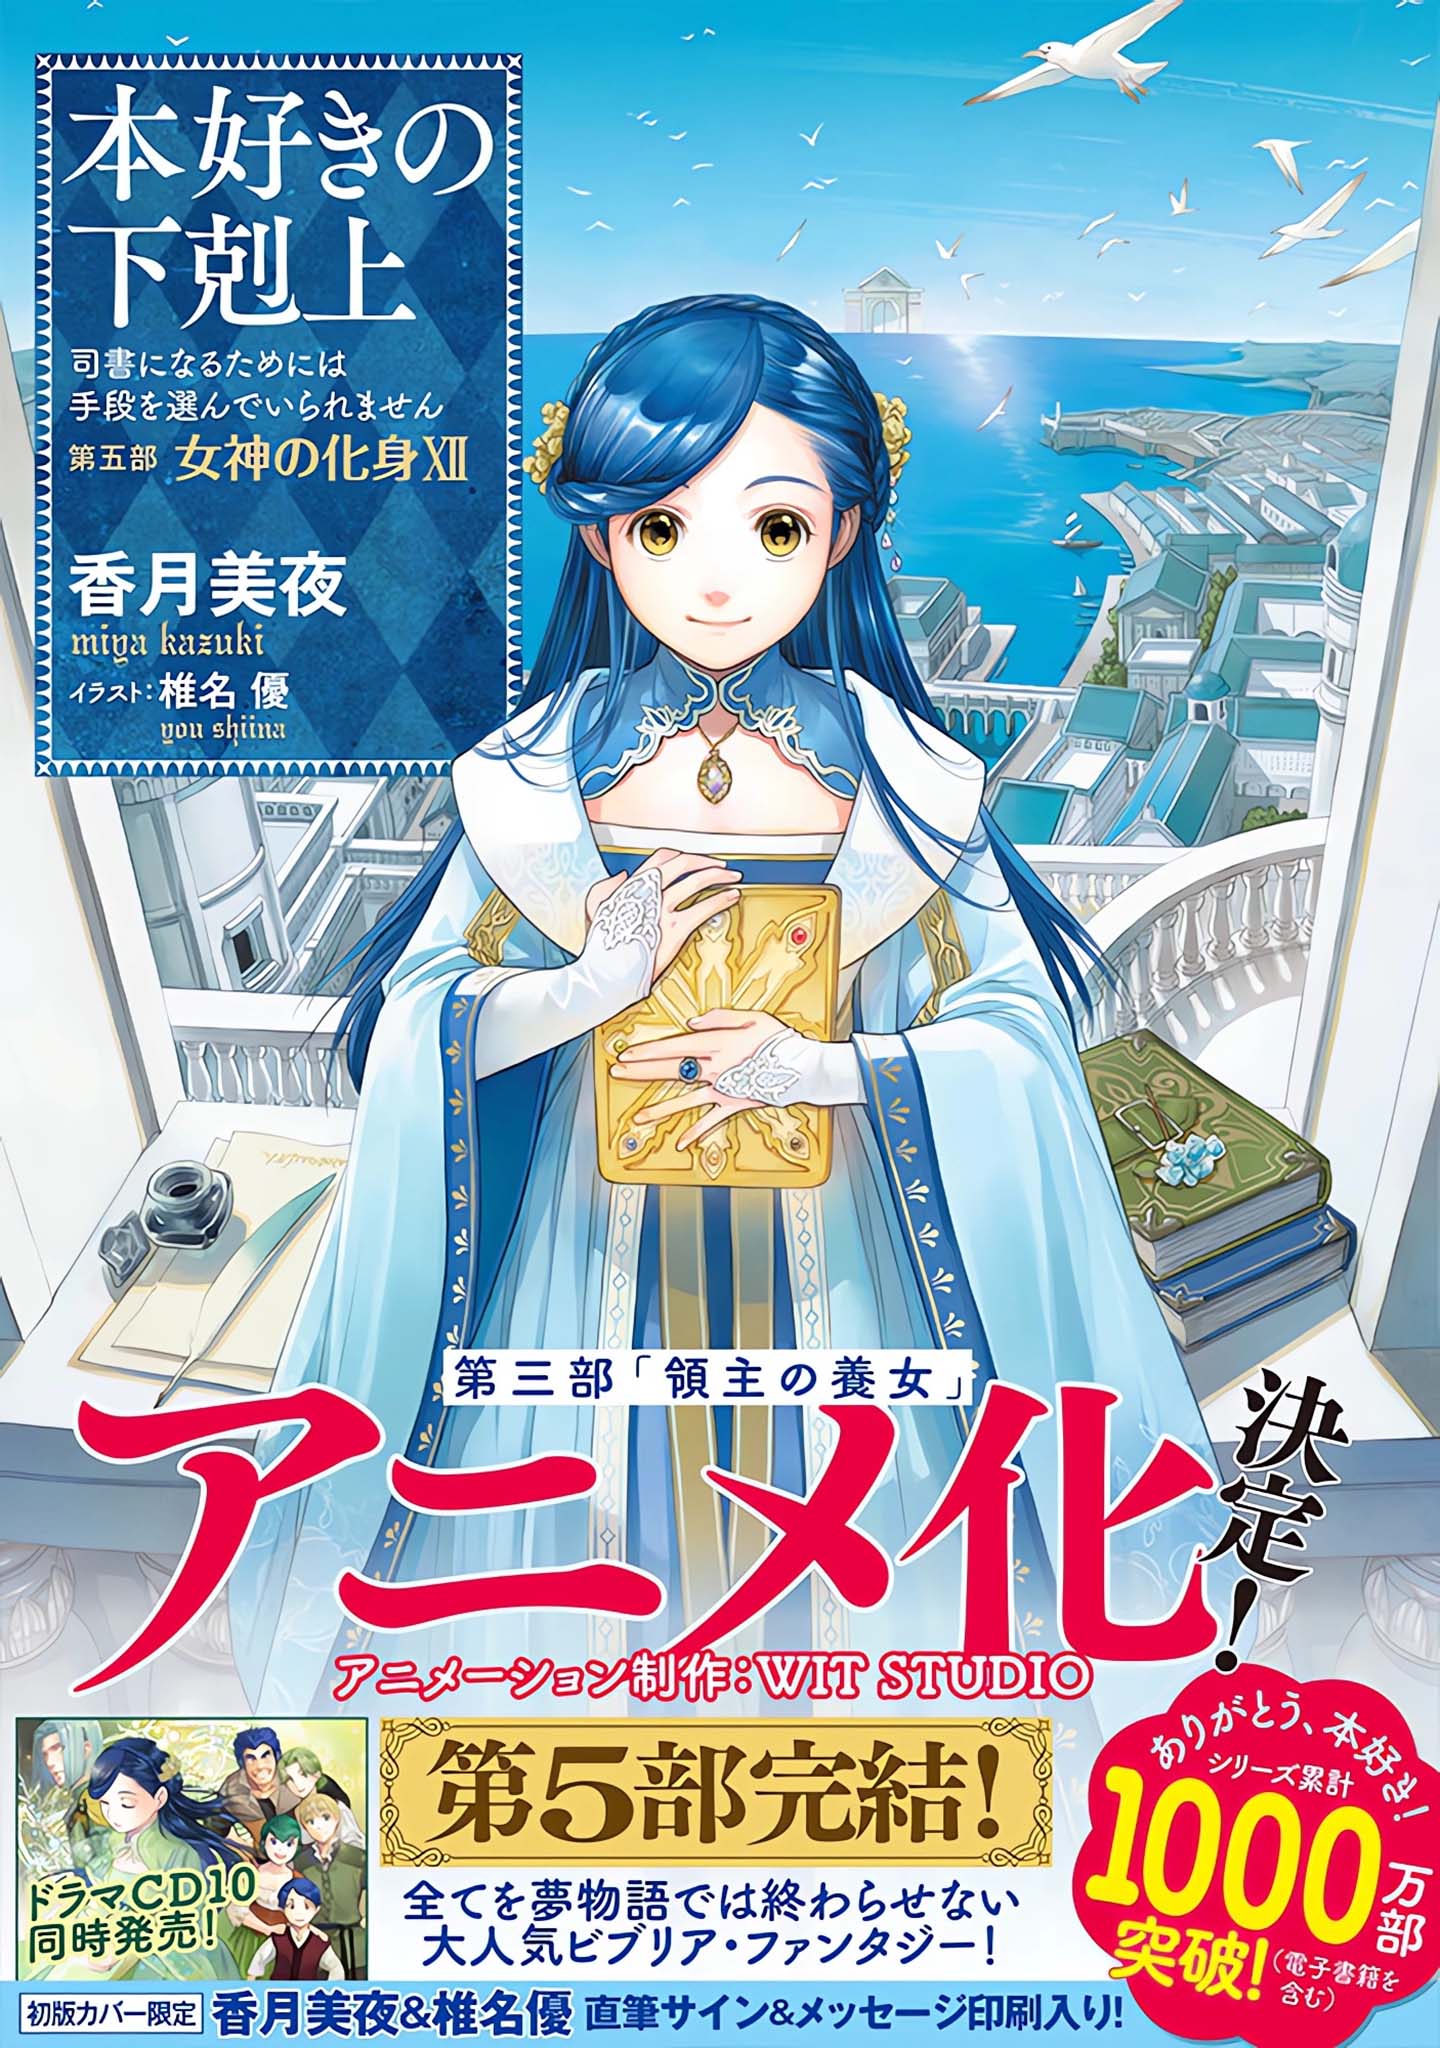 Annonce de l'anime Ascendance of a Bookworm Saison 4 (Honzuki no Gekokujou)